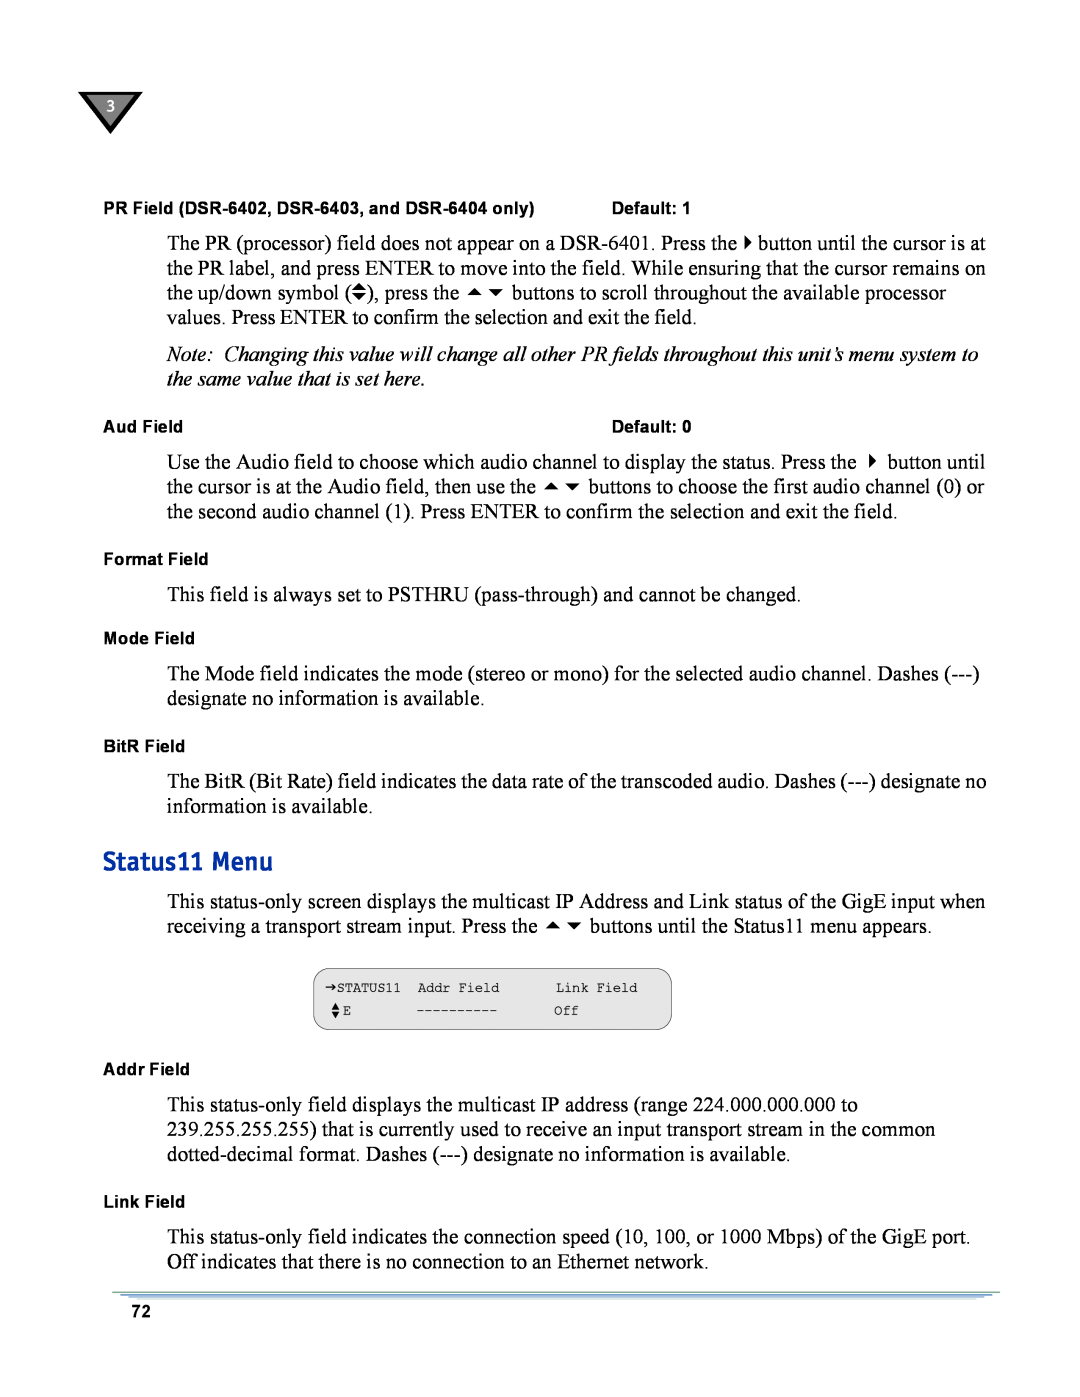 Motorola DSR-6400 manual Status11 Menu 